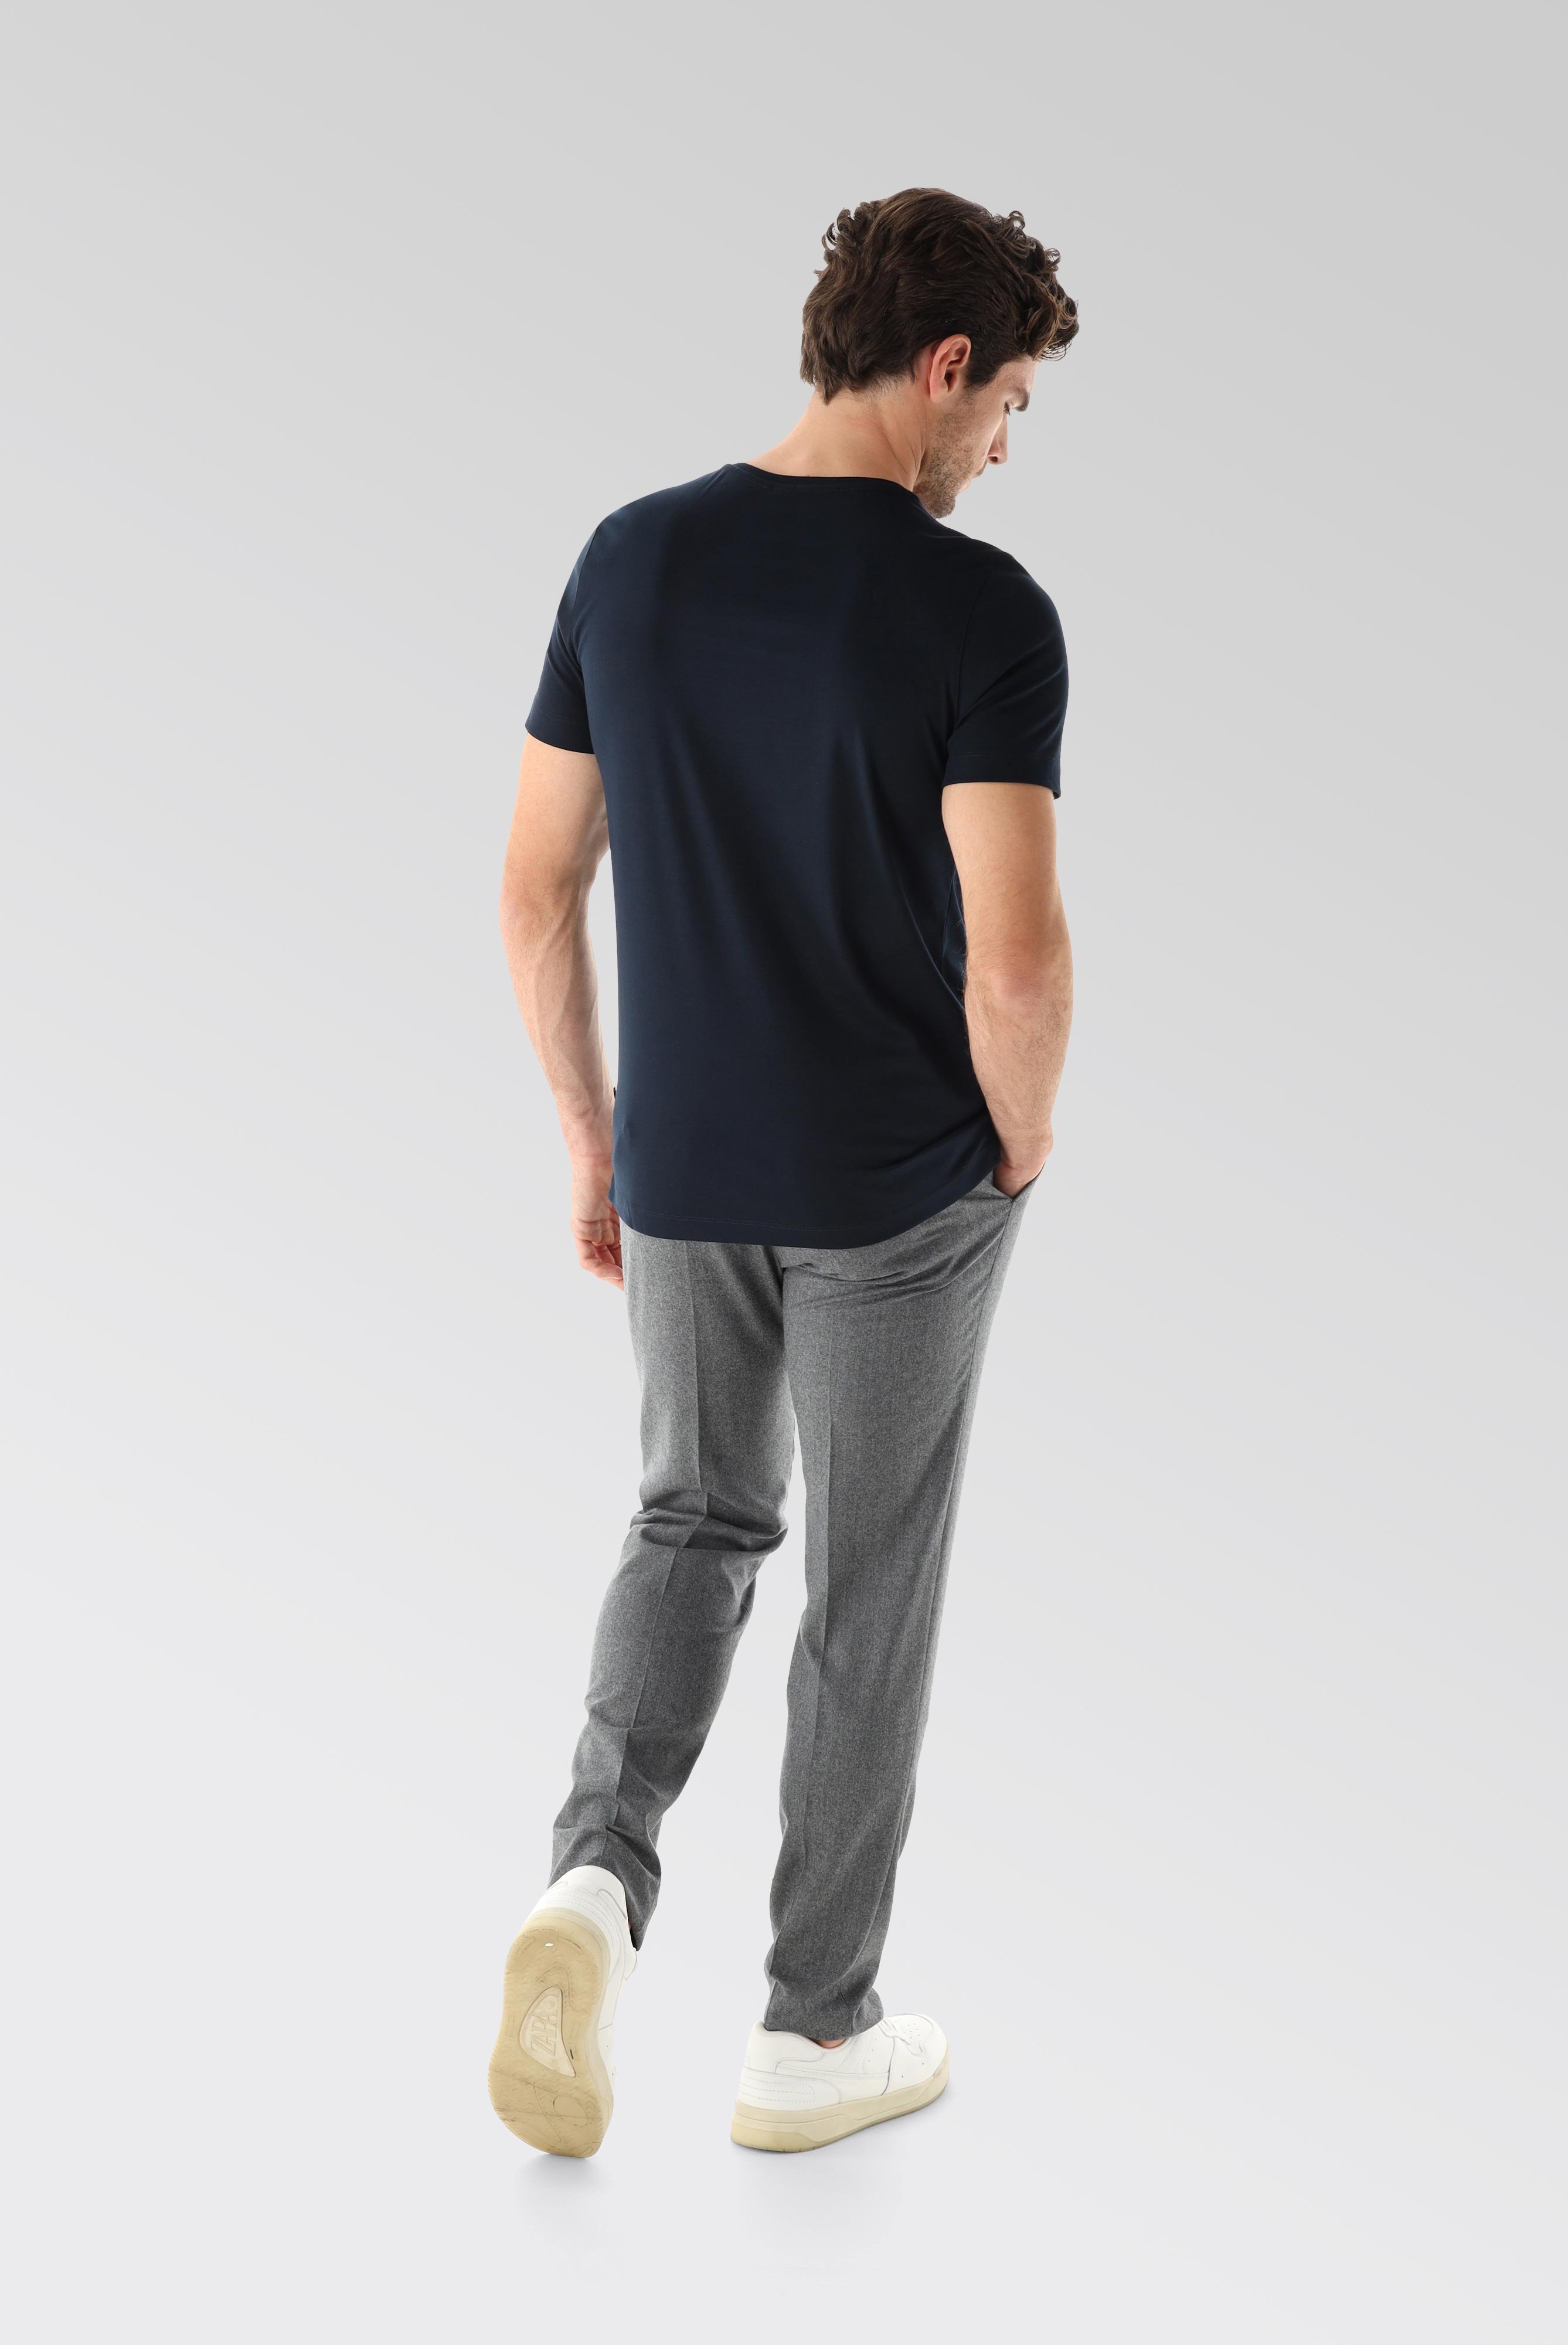 T-Shirts+V-Ausschnitt Jersey T-Shirt Slim Fit+20.1715.UX.180031.790.M